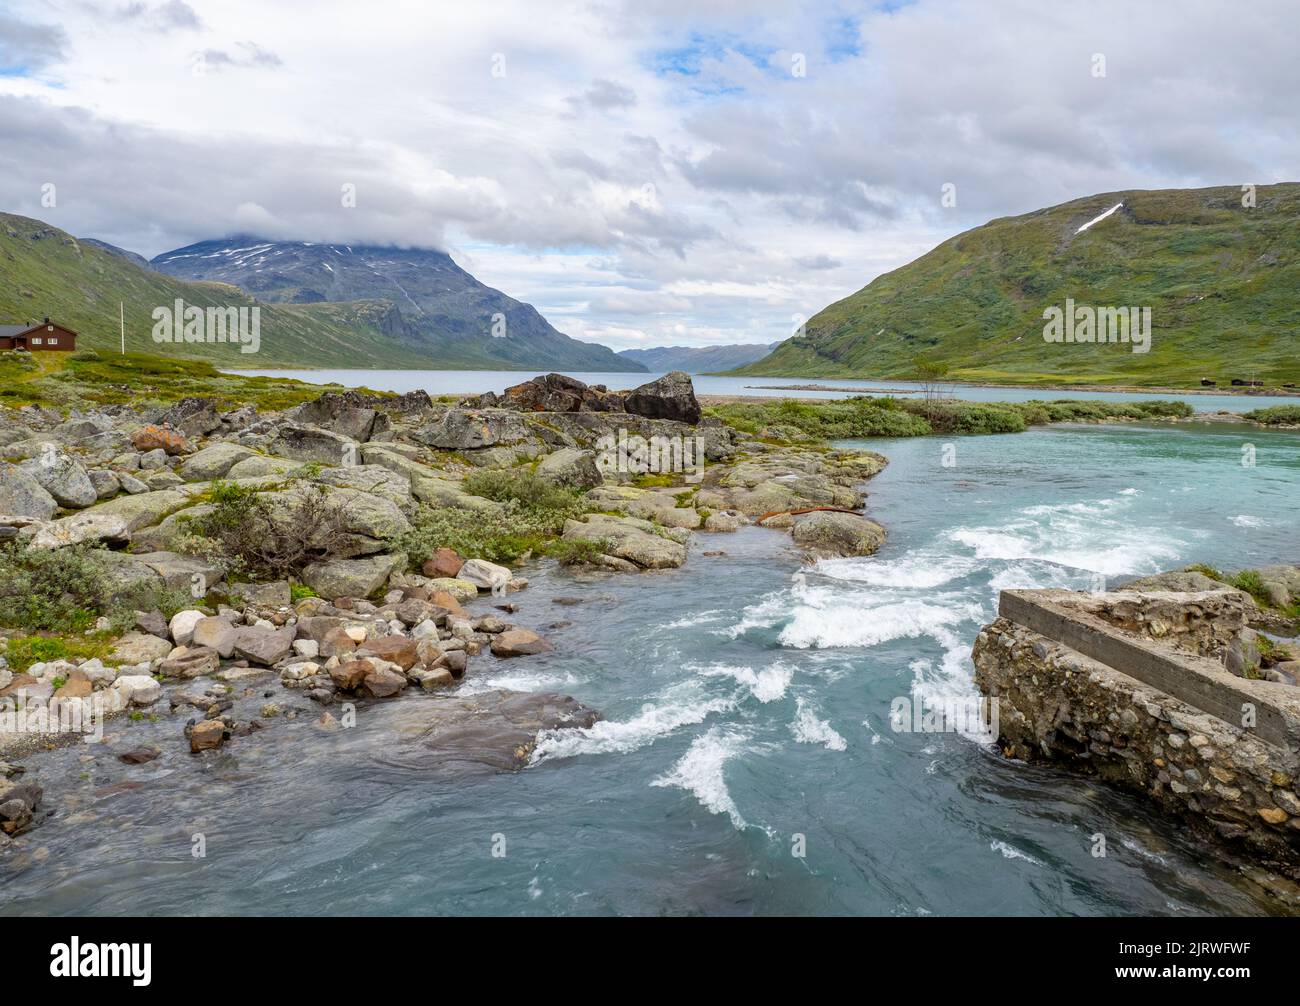 La rivière Mjolkedola entrant dans le lac Bygdin à Eidsbugarden dans le parc national de Jotunheimen, au centre de la Norvège Banque D'Images